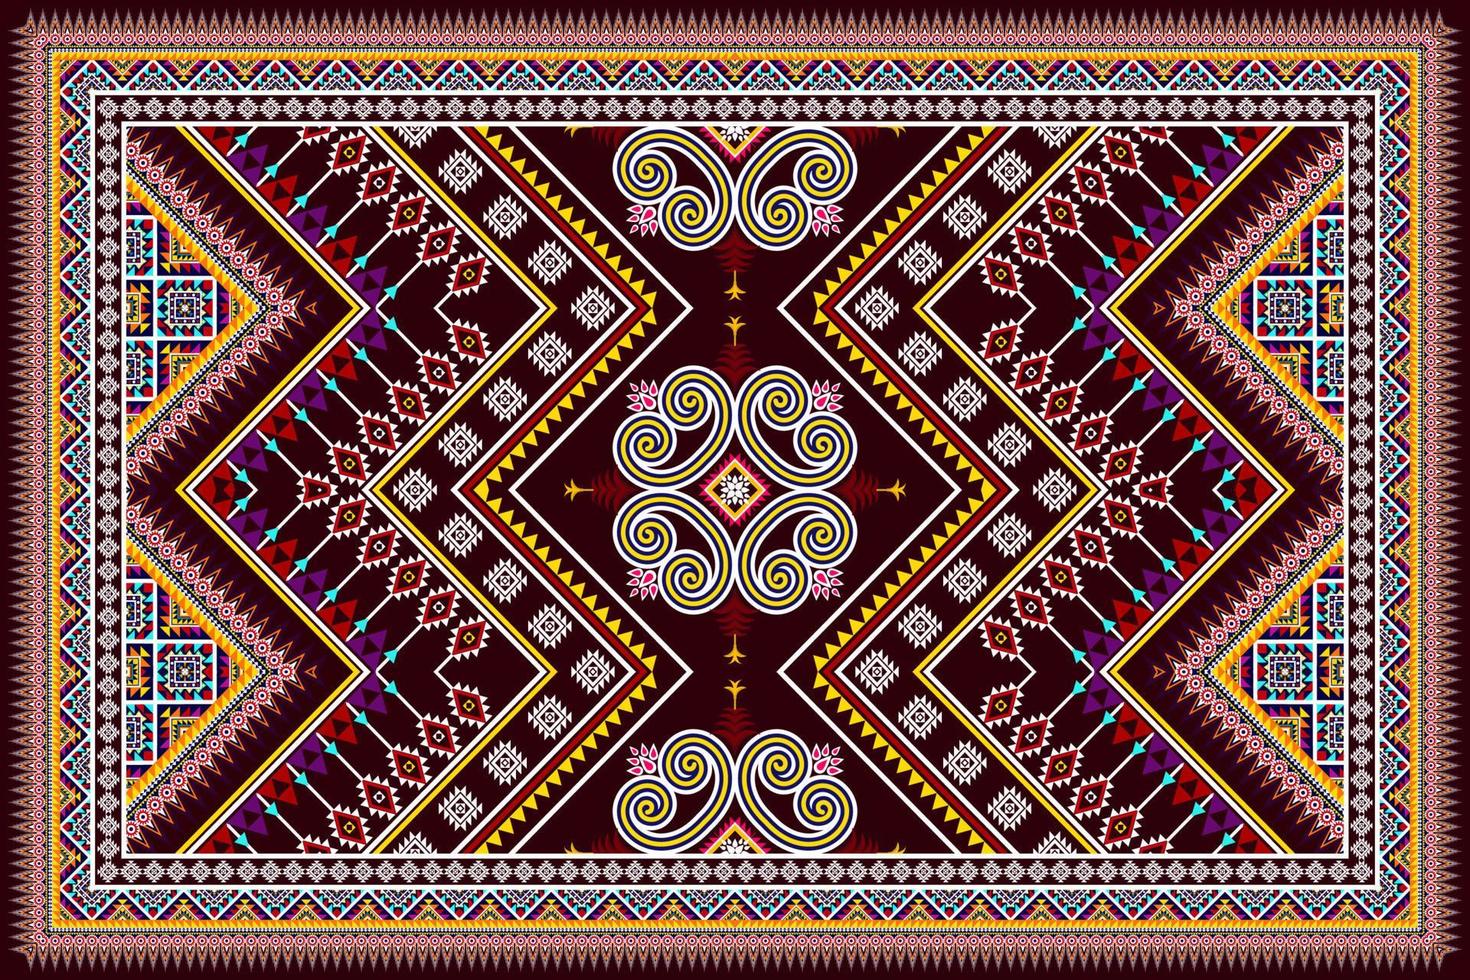 ikat etnische naadloze patroon ontwerp abstracte geometrische Azteekse stof tapijt ornament chevron textiel decoratie behang. tribal turkije afrikaanse indische amerikaanse traditionele borduurvector vector